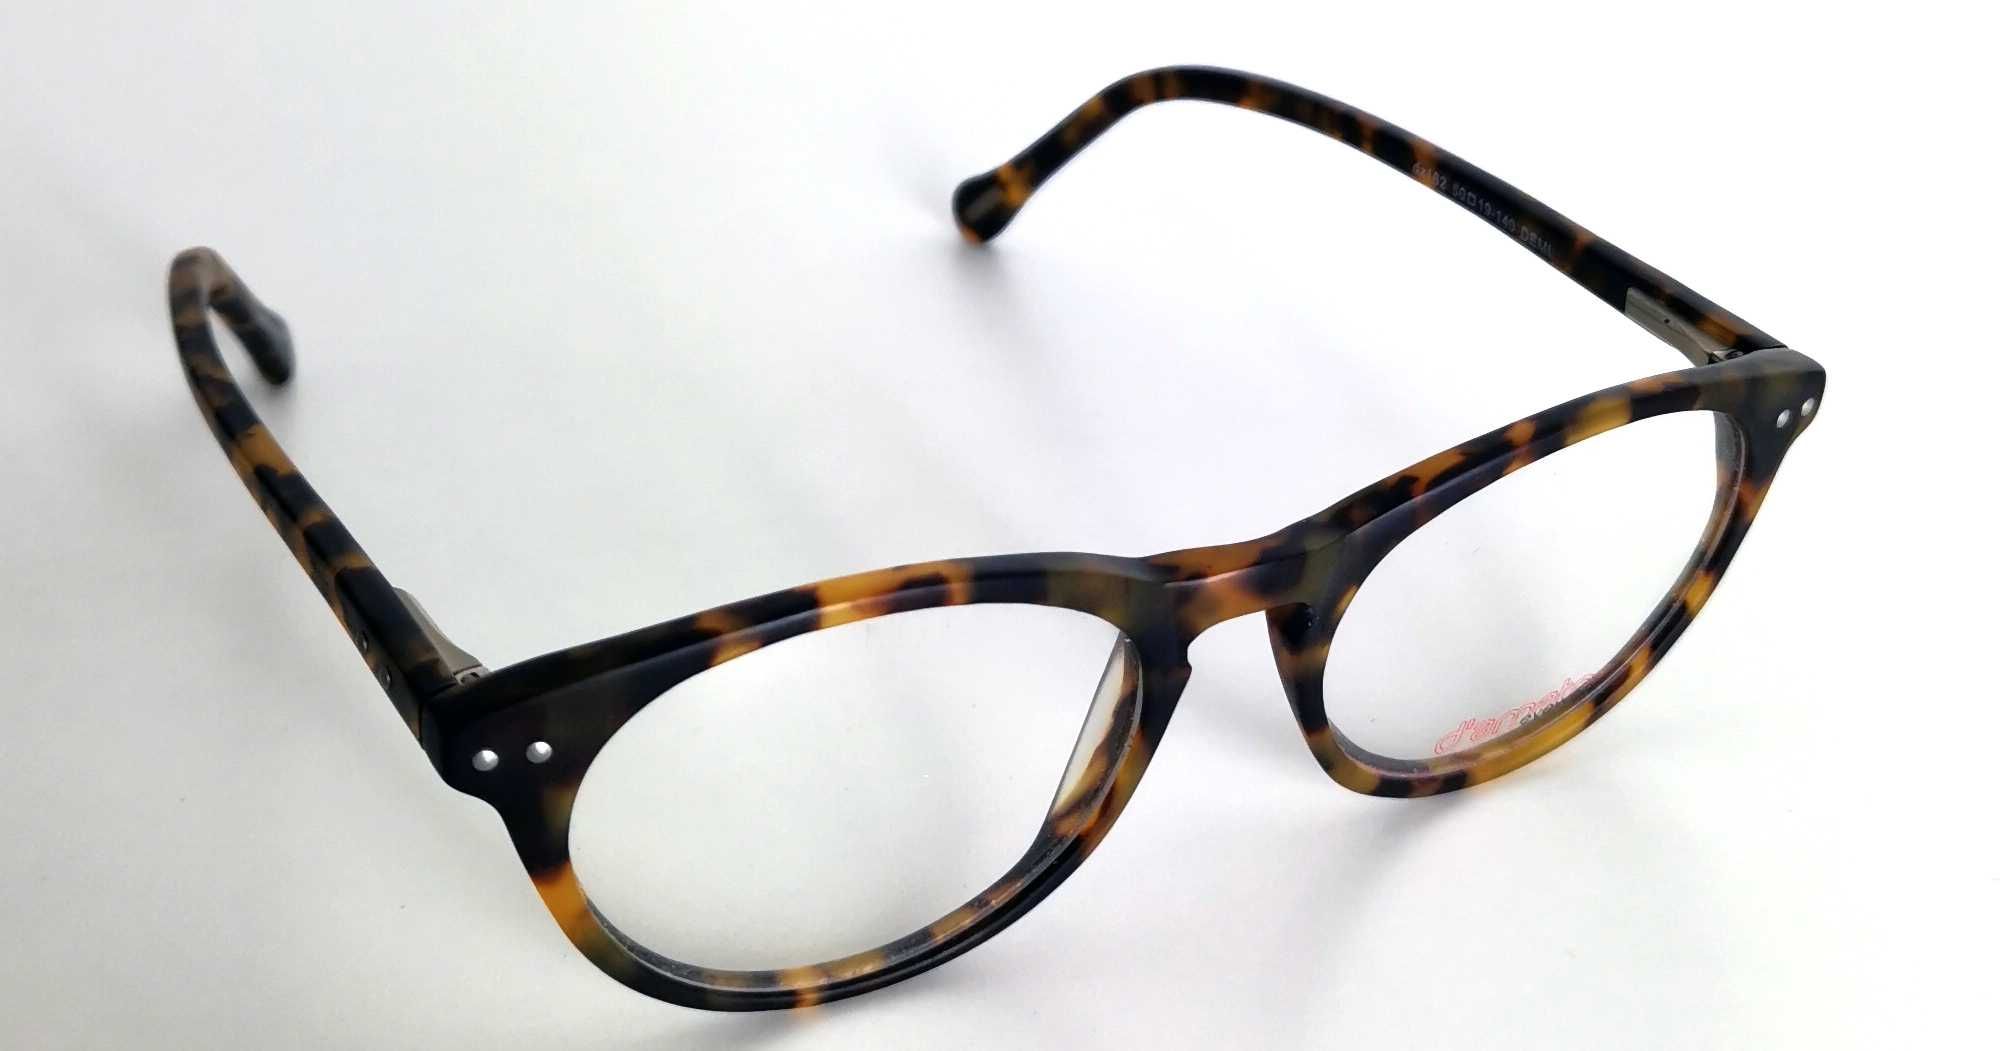 Oprawki do okularów D'Amato Okulary korekcyjne - OKAZJA NAJTANIEJ